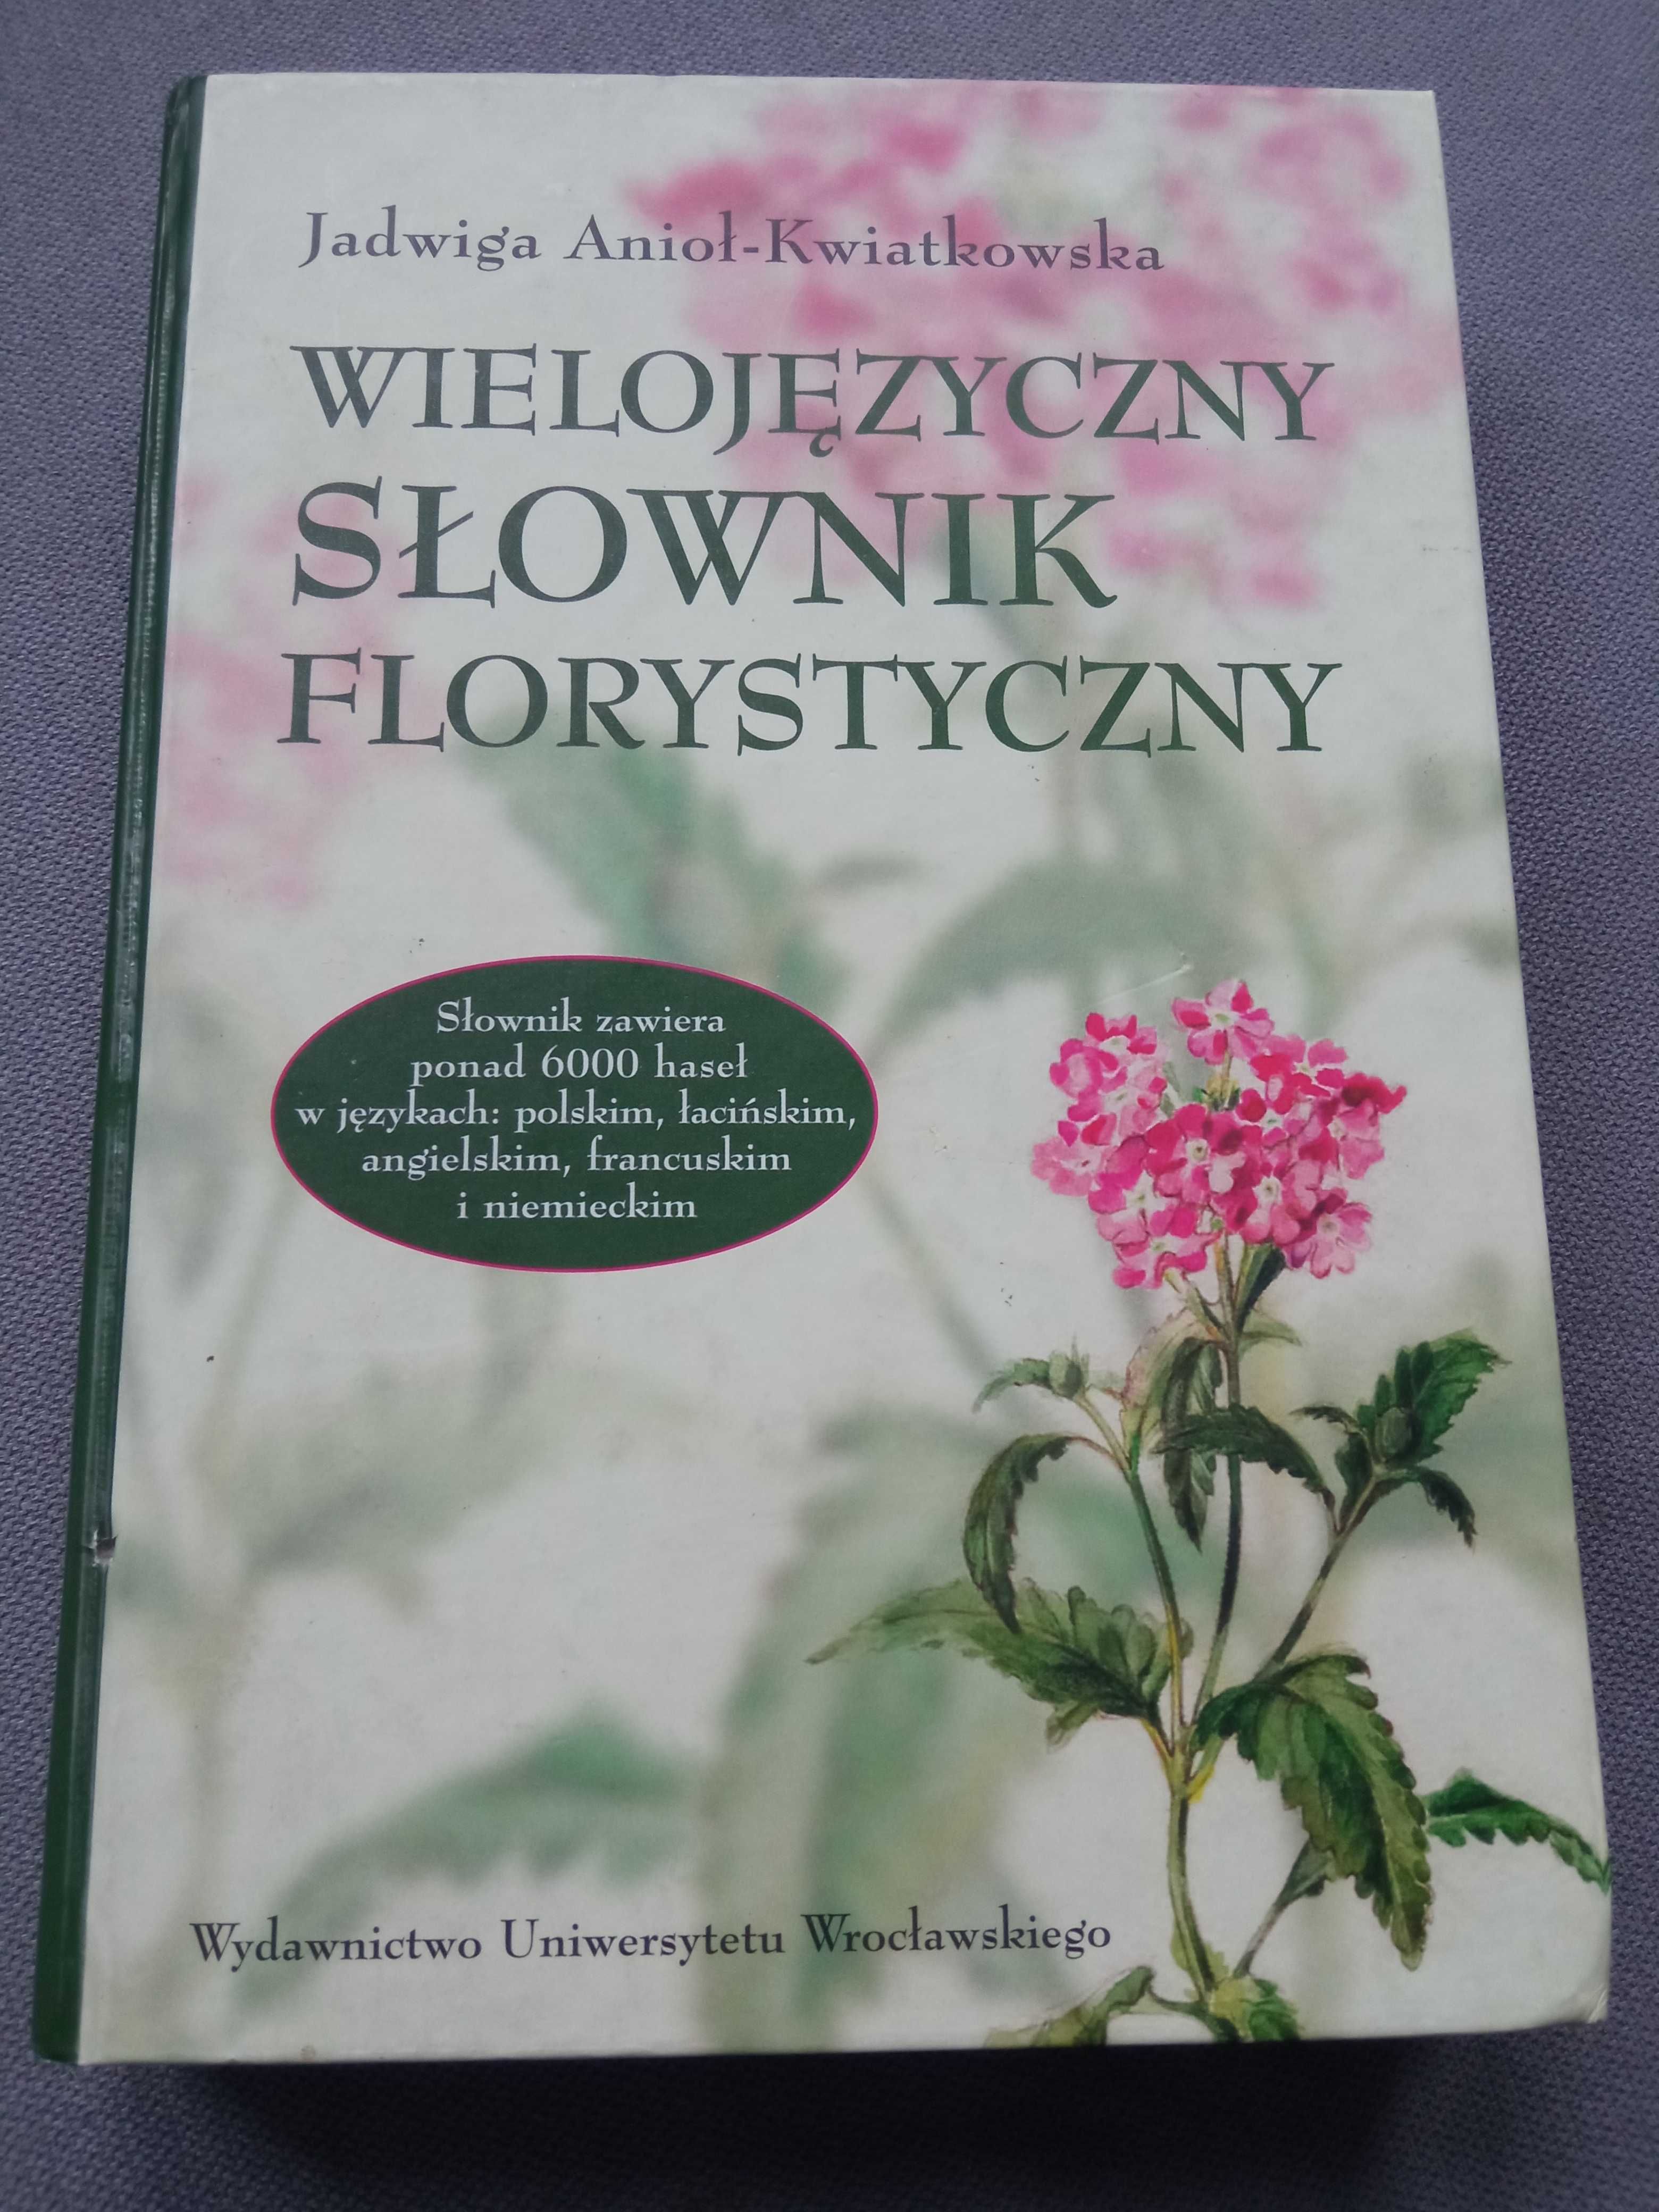 Wielojęzykowy Słownik Florystyczny autor Jadwiga Anioł -Kwiatkowska